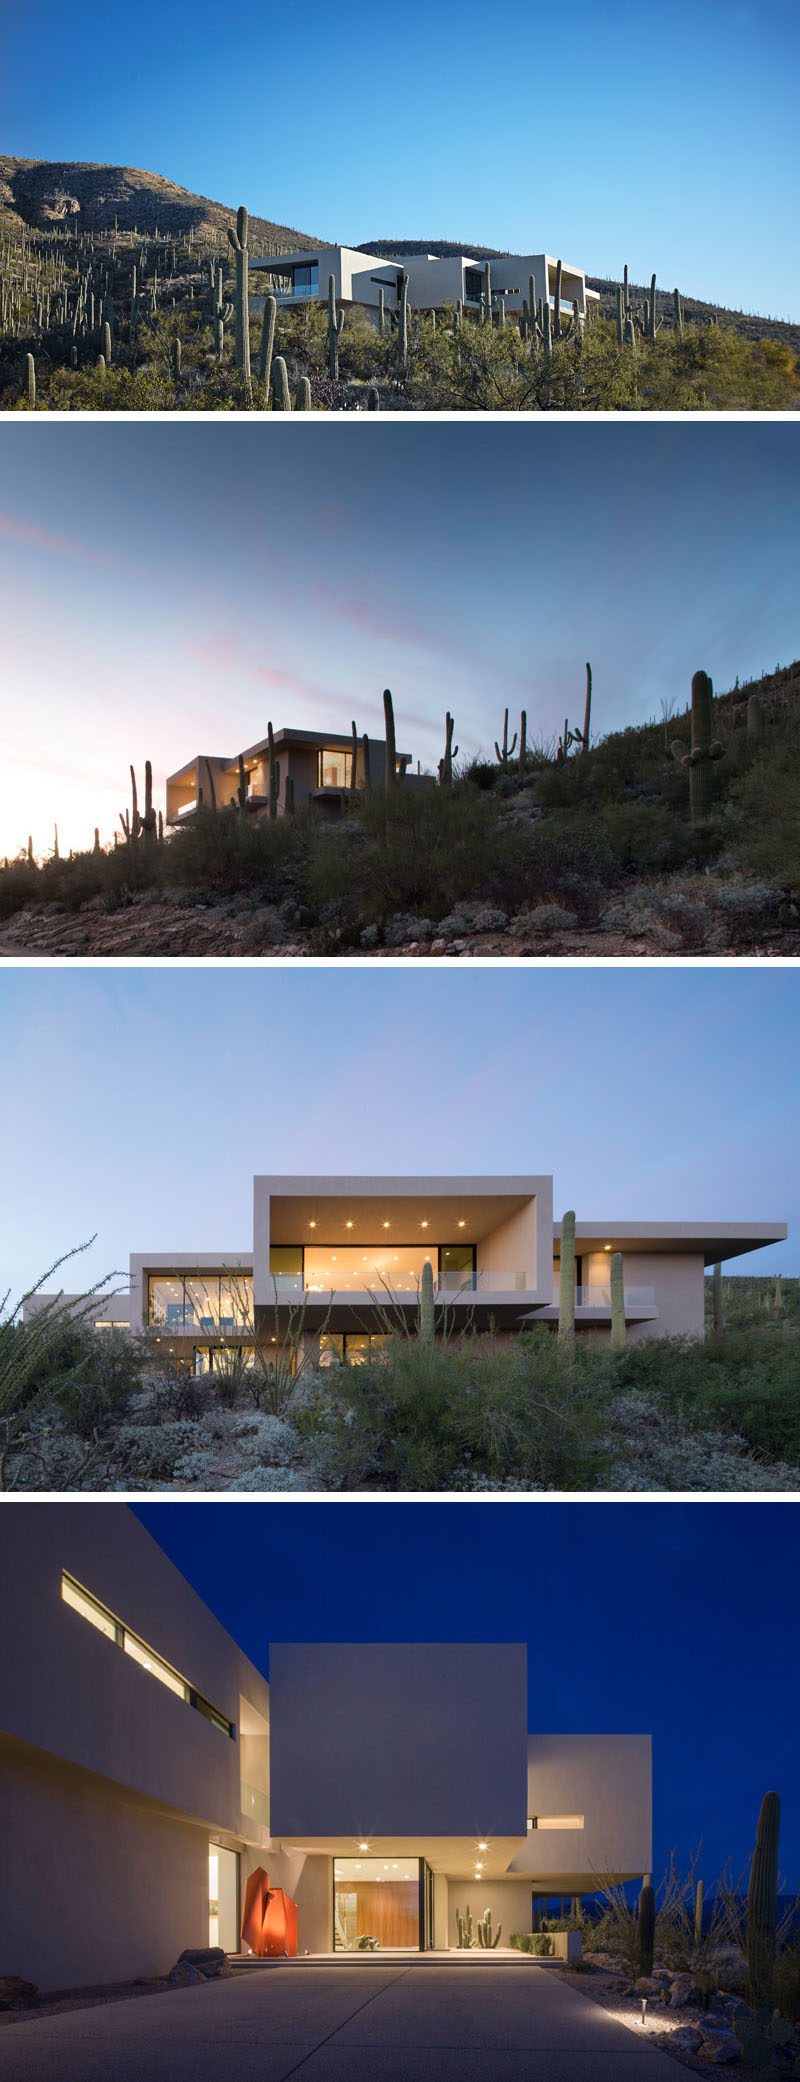  Kevin B. Howard Architects спроектировали современный дом в предгорьях Тусона, штат Аризона, для своего клиента который, запросил «современный минималистичный дом: первозданный ящик, который, казалось, приземлился в пустыне». #ModernHouse # Архитектура 